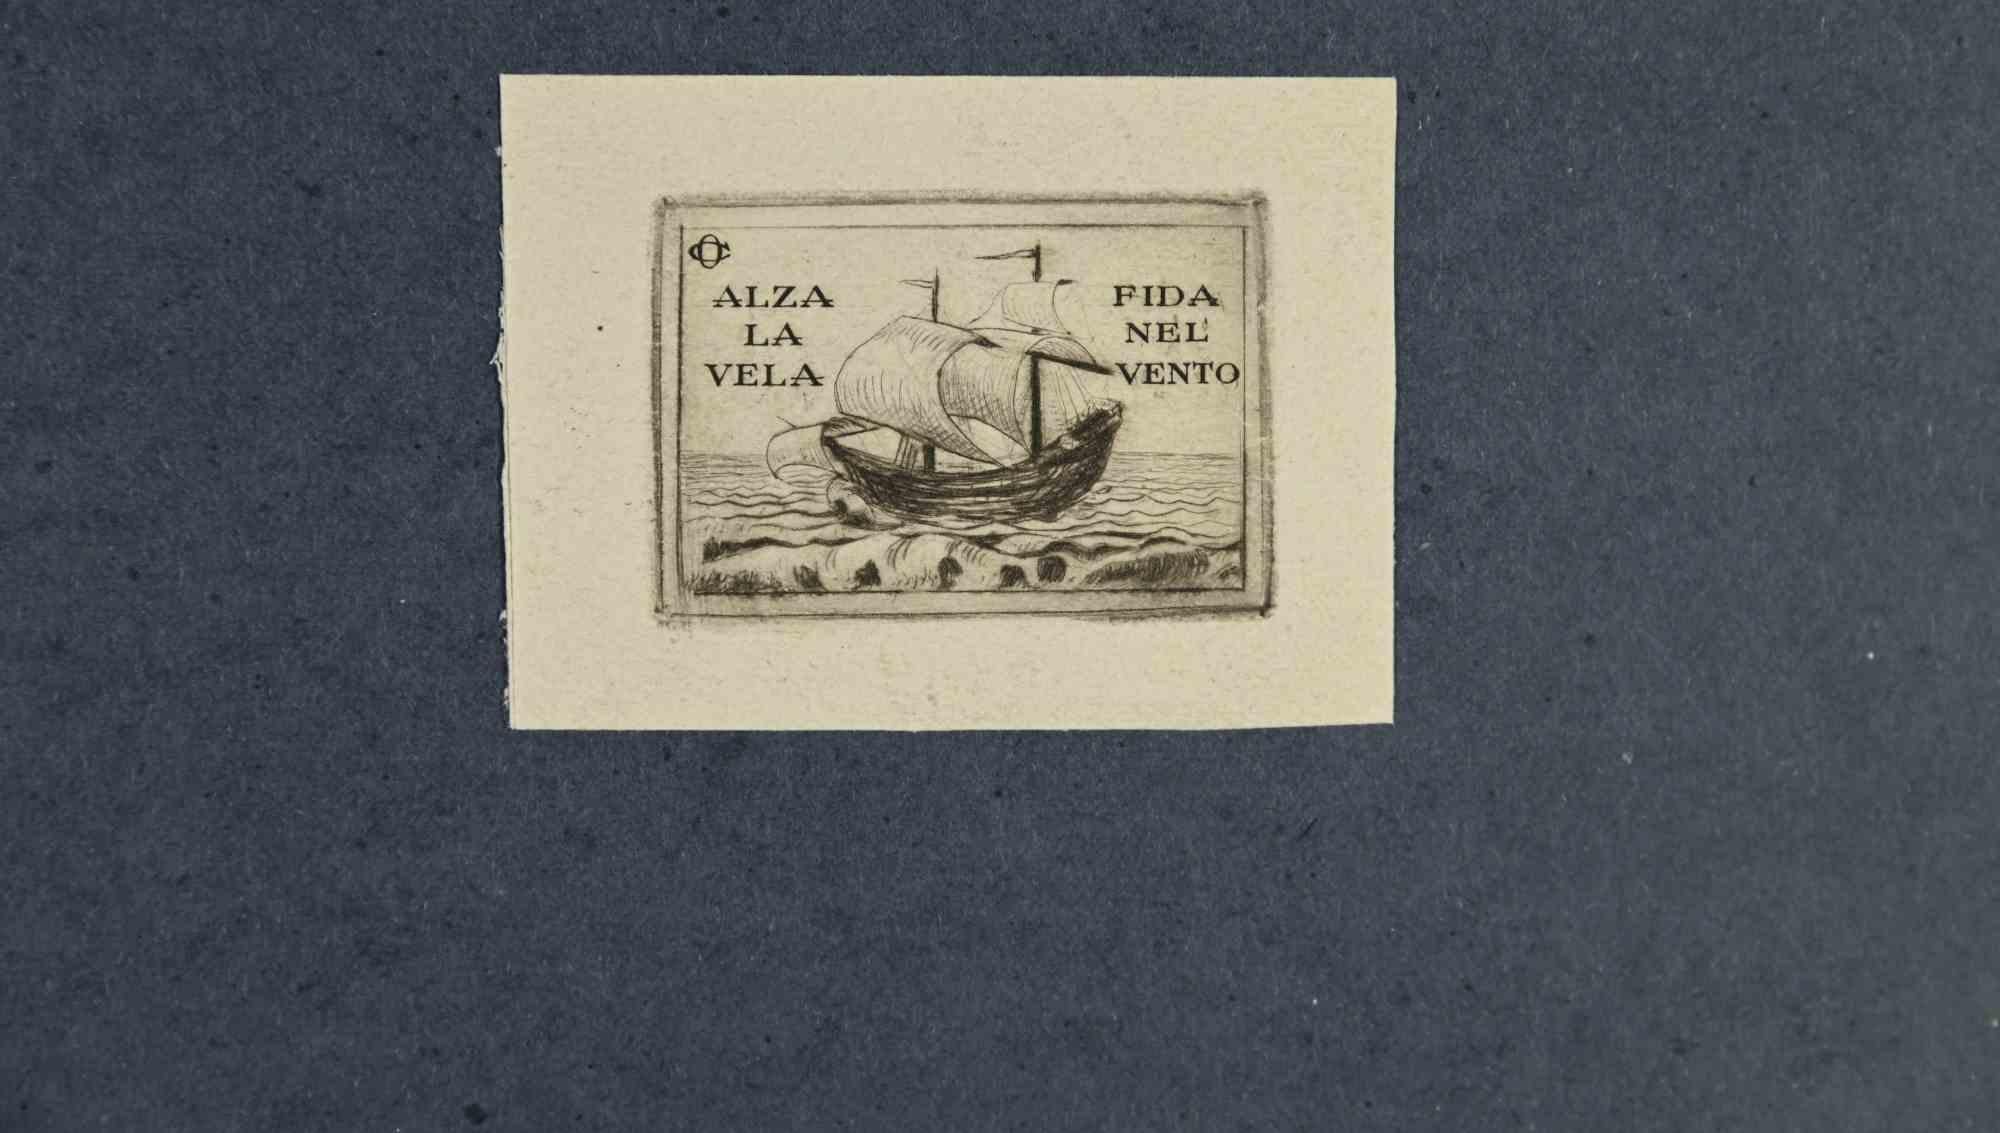 Unknown Figurative Print - Ex Libris - Alza la vela. Fida nel vento - Woodcut - Mid 20th Century